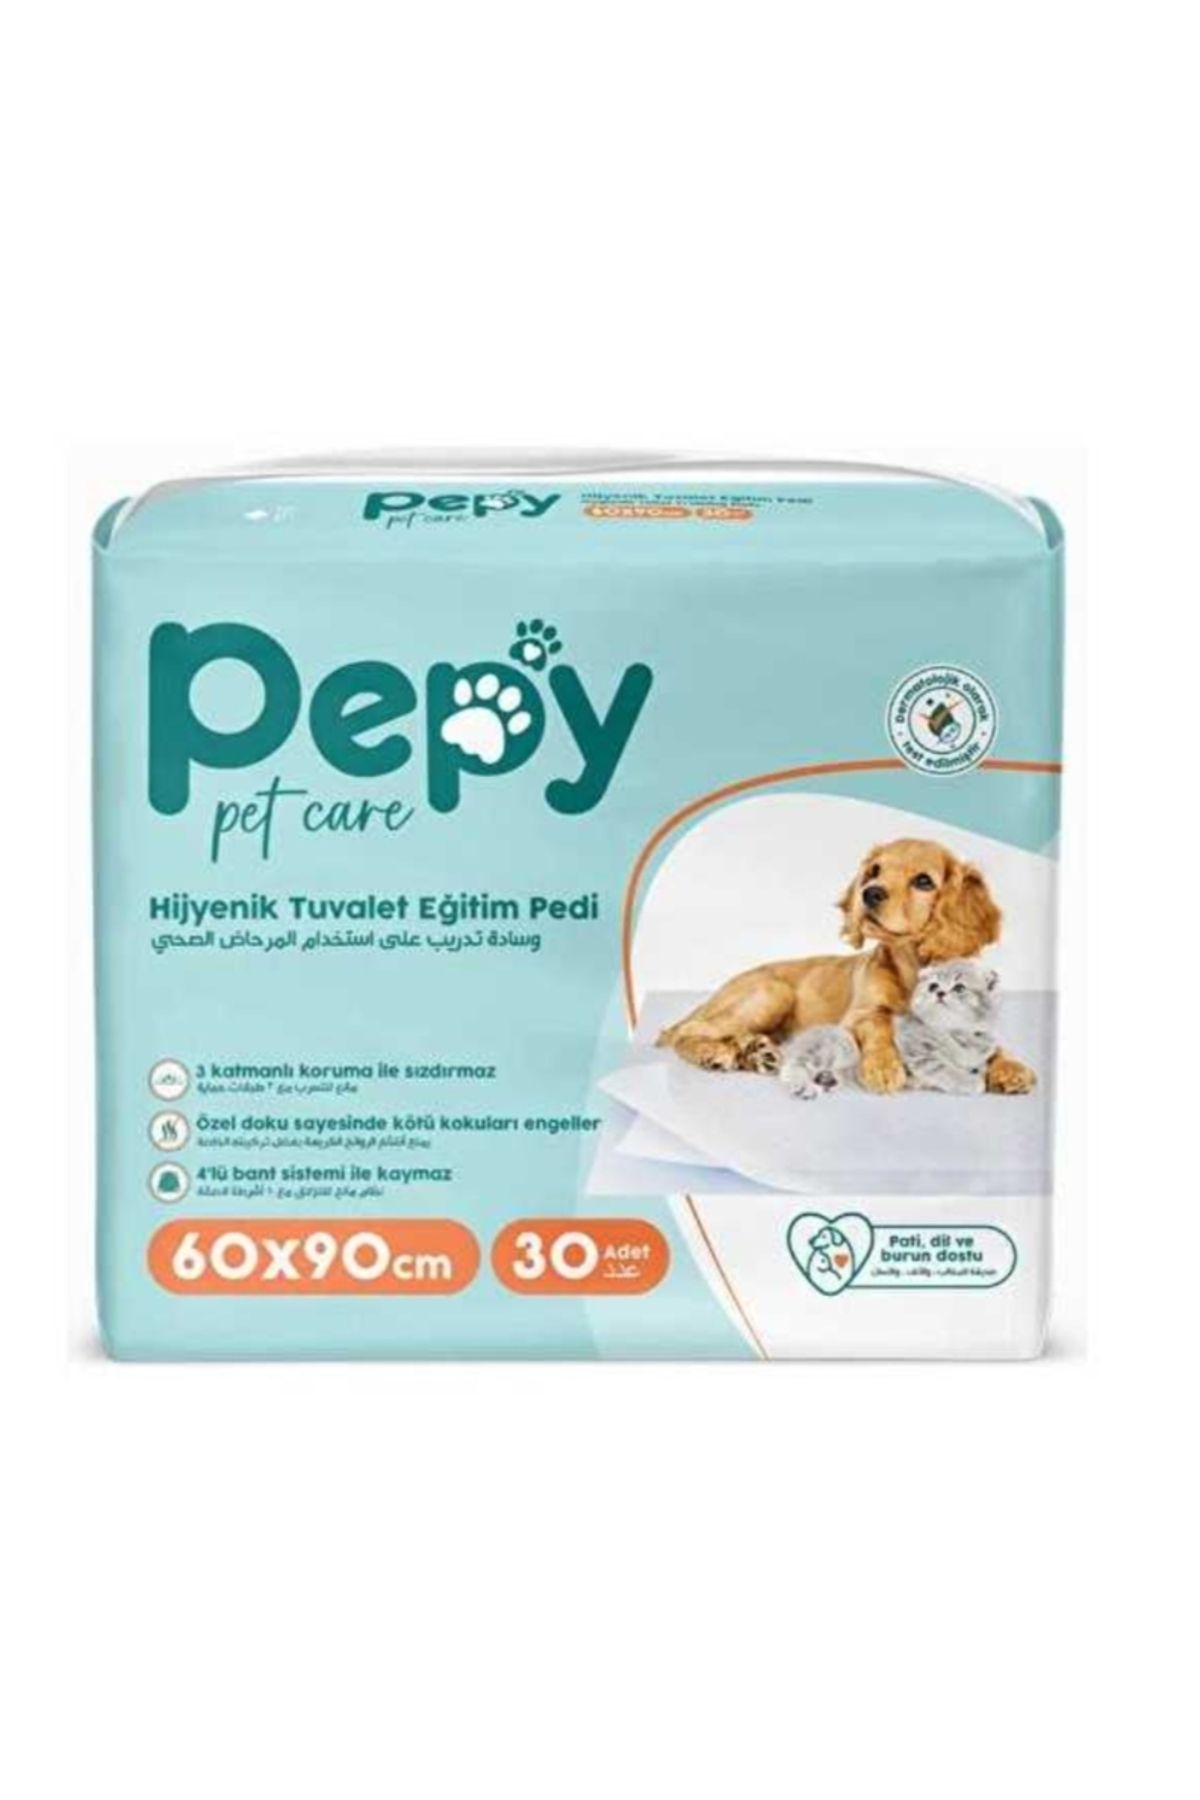 PEPY Hijyenik Yapışkanlı Tuvalet Eğitim Pedi Köpek / Kedi Çiş Pedi